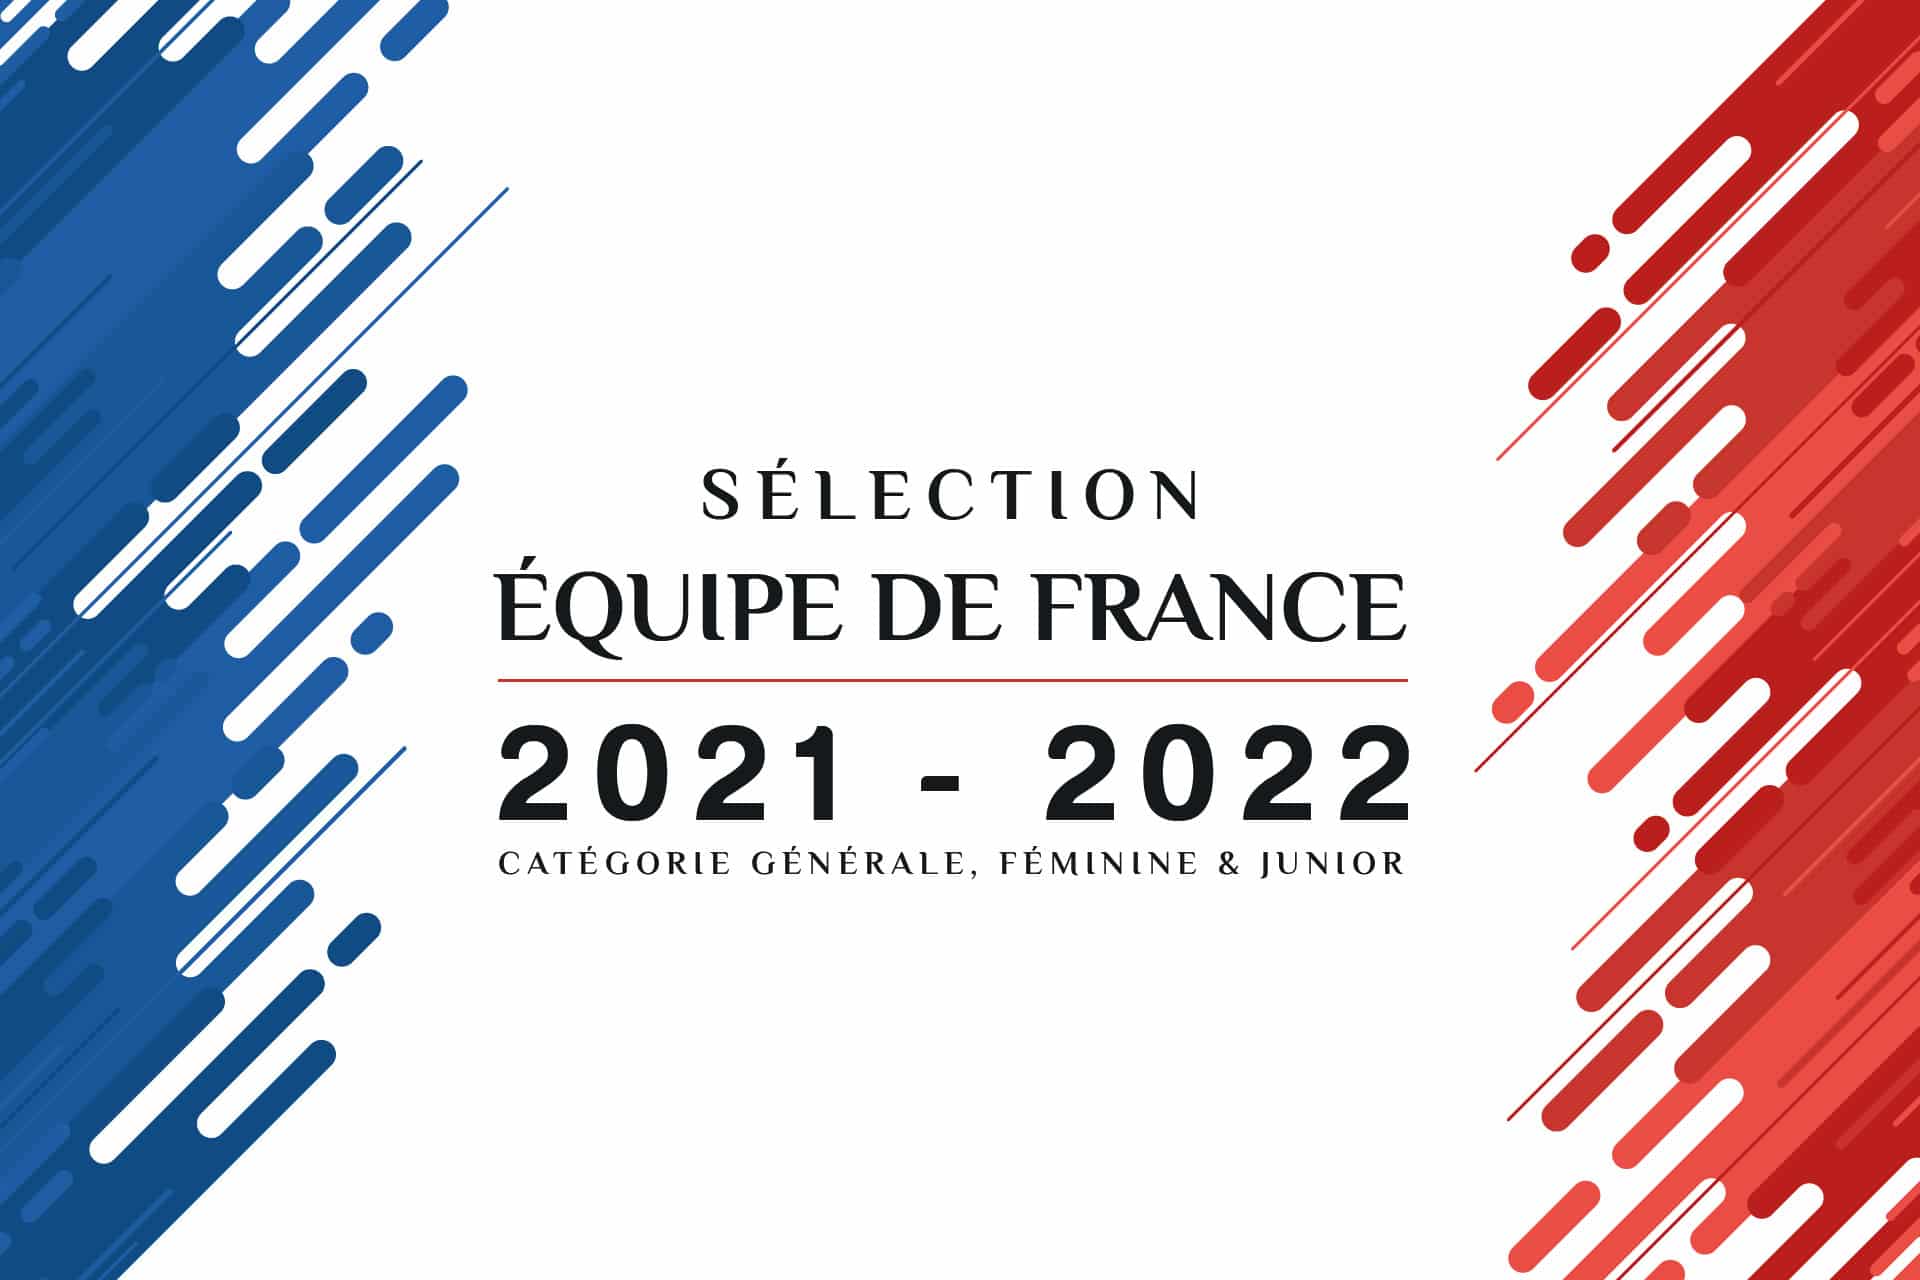 Qui fera partie de l’équipe de France pour la saison 2022 ?